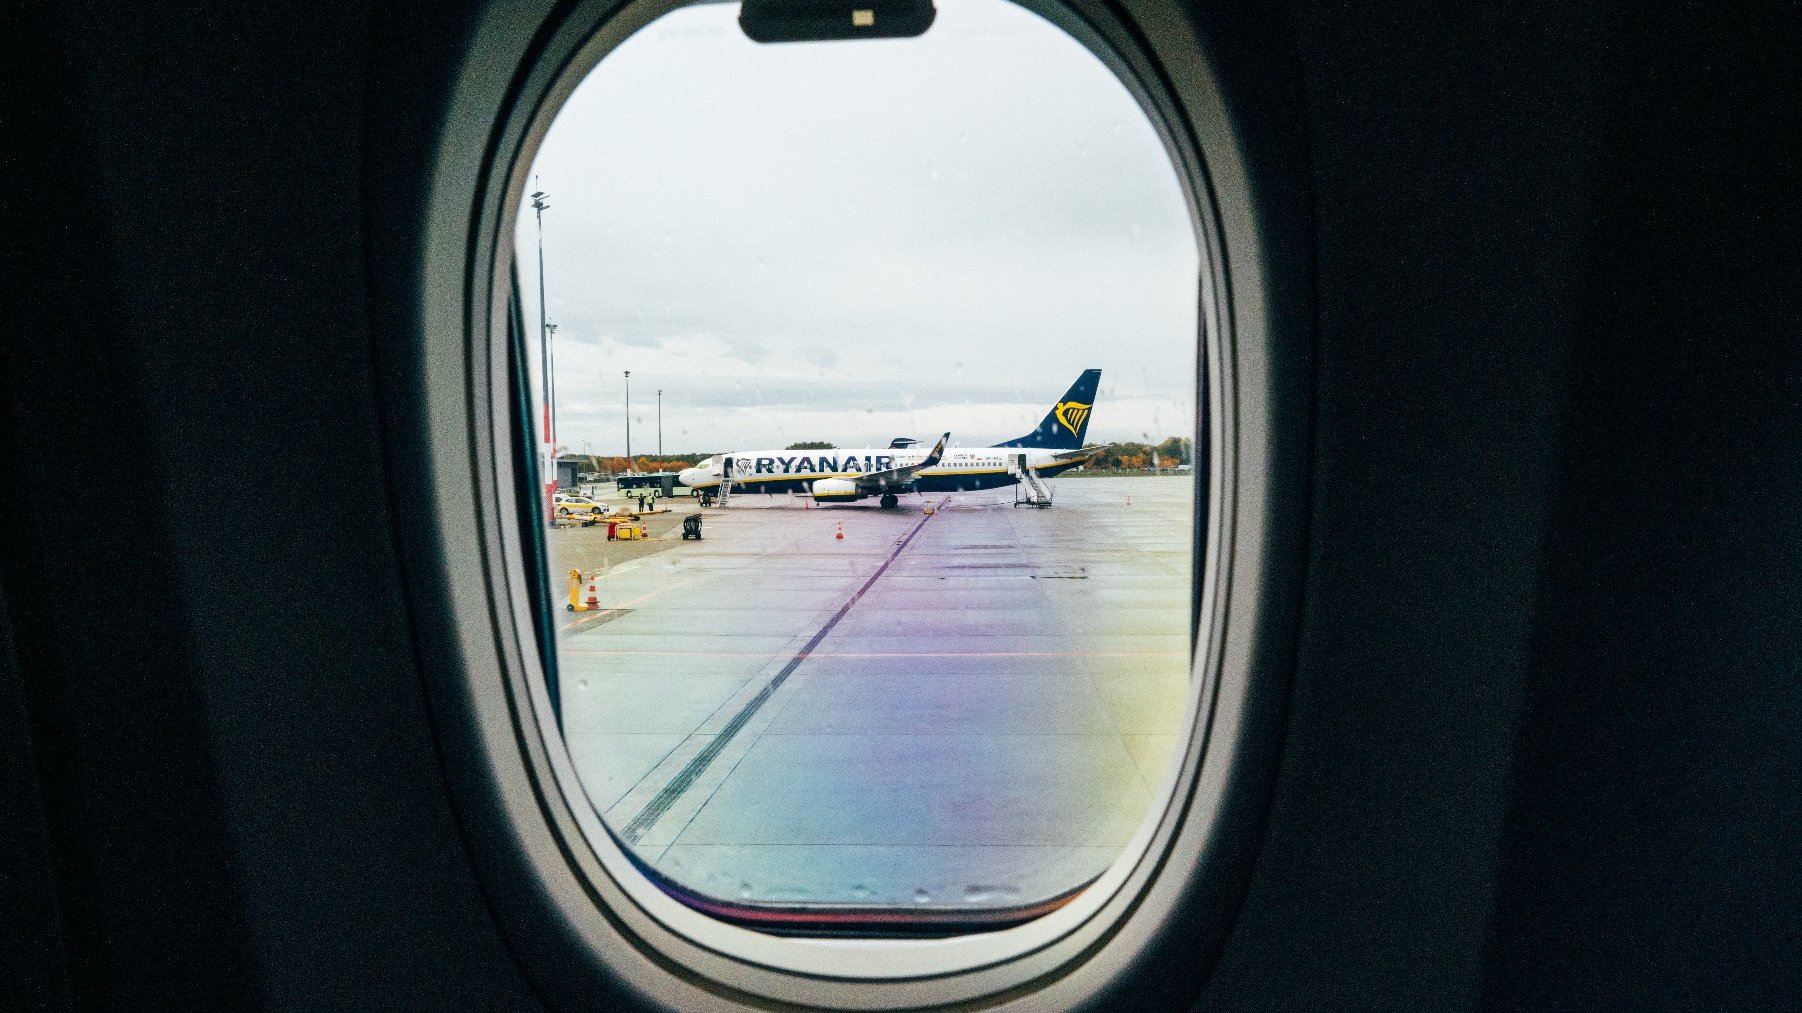 Widok z okienka samolotu na samolot Ryanair stojący na płycie lotniska